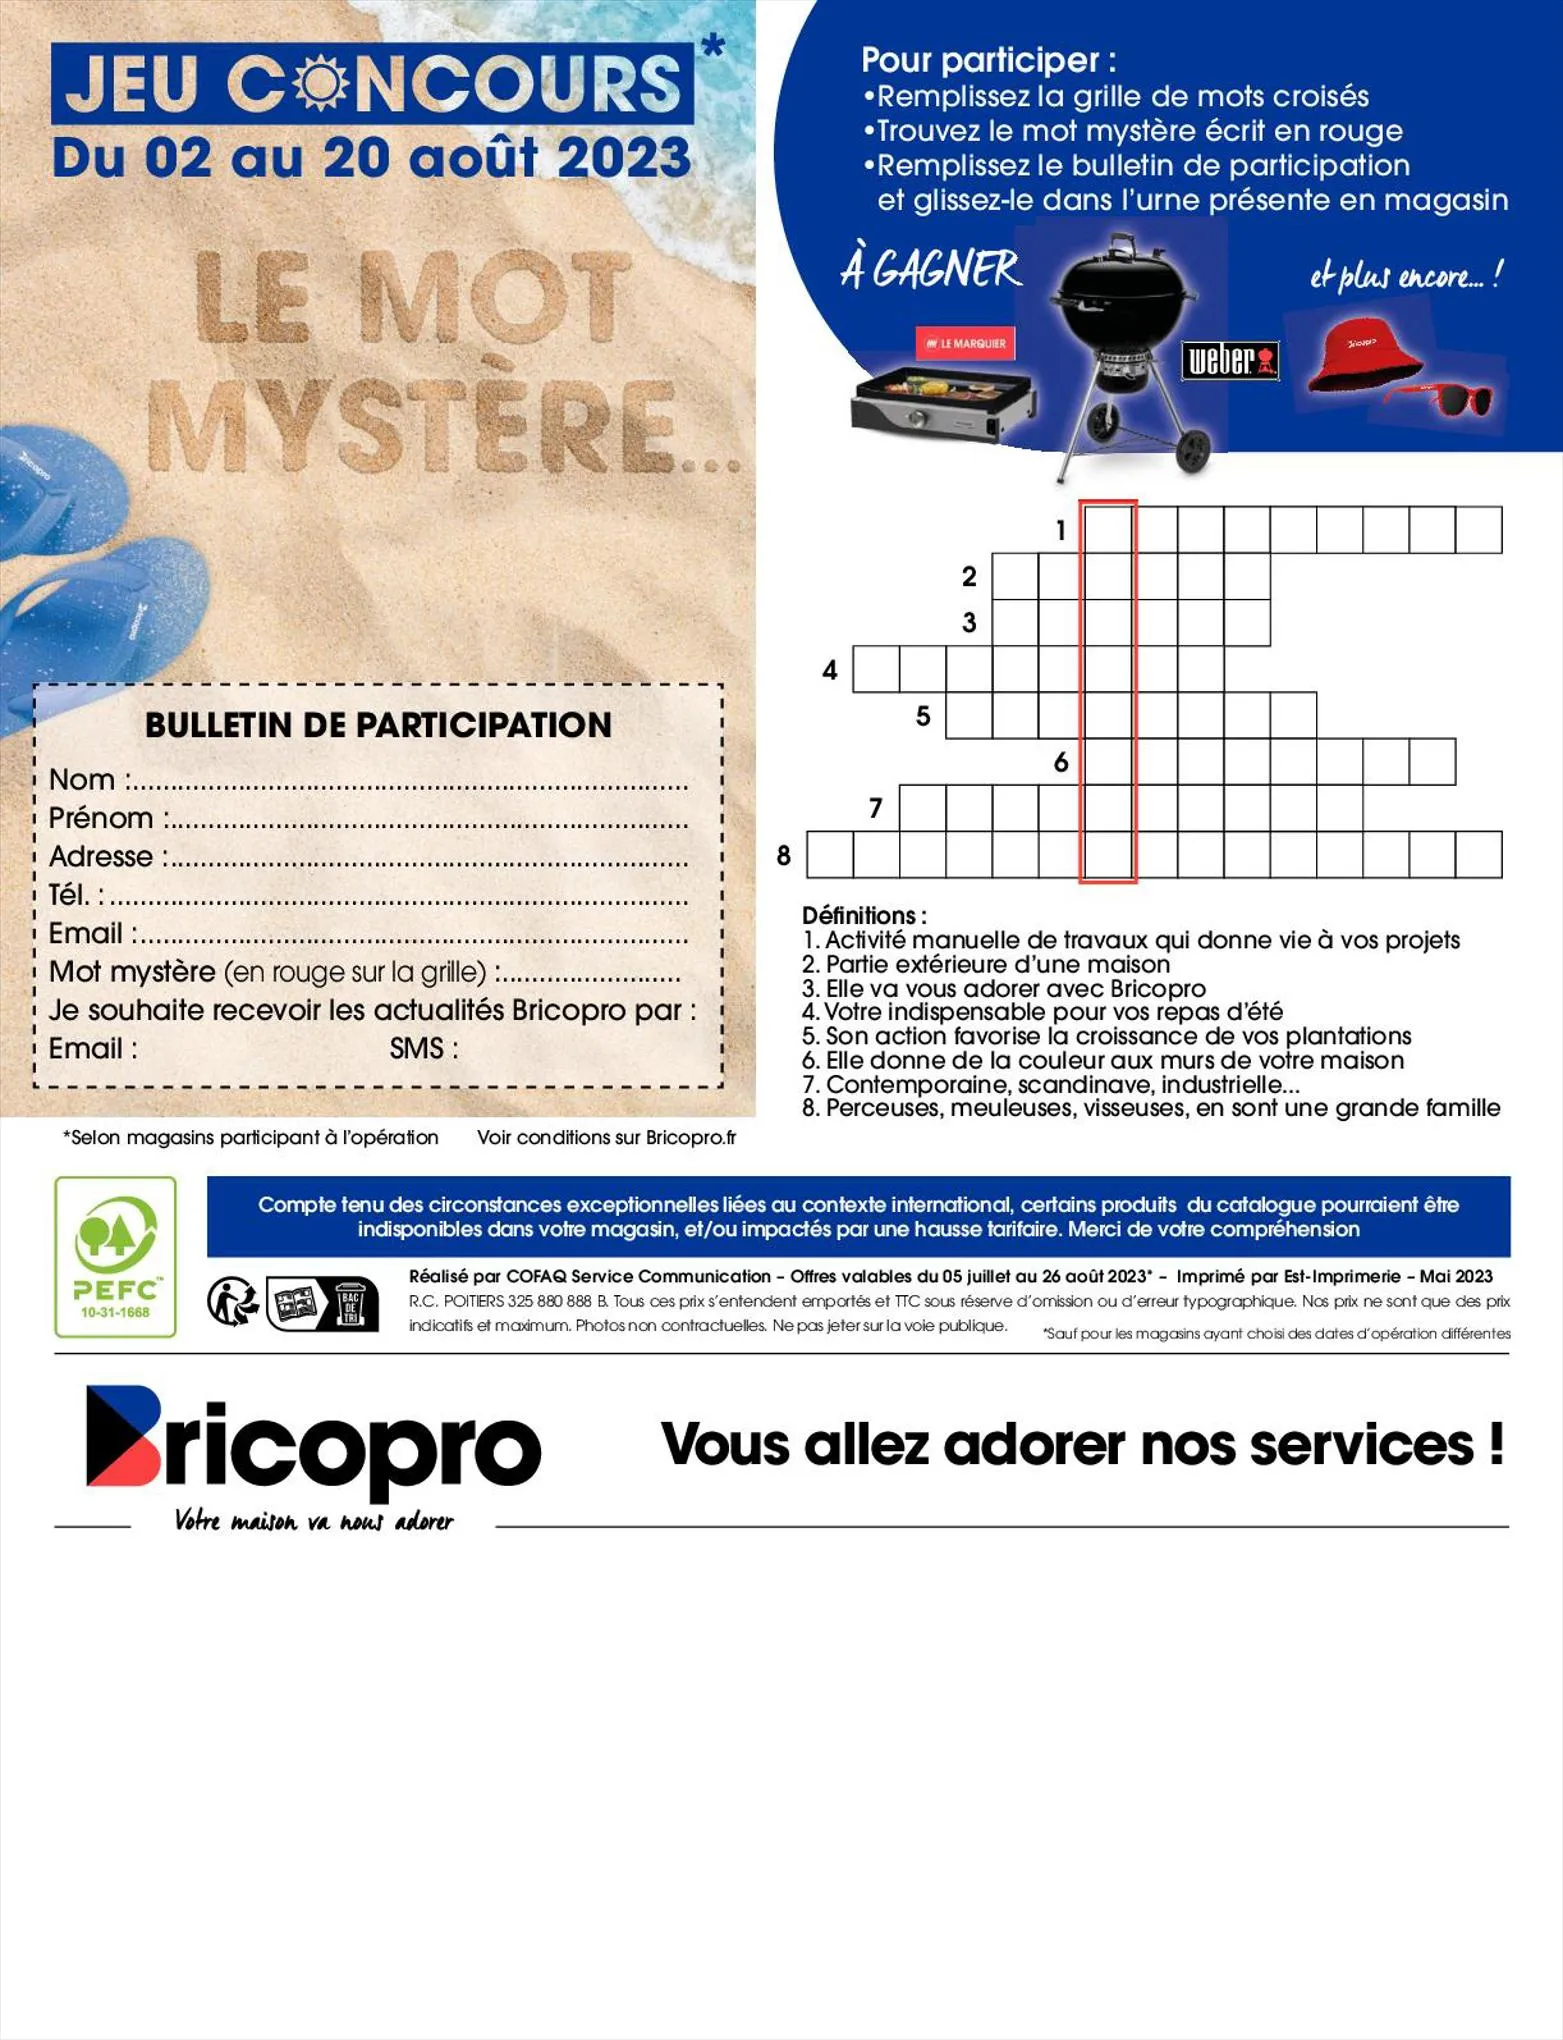 Catalogue Catalogue Brico Pro, page 00012